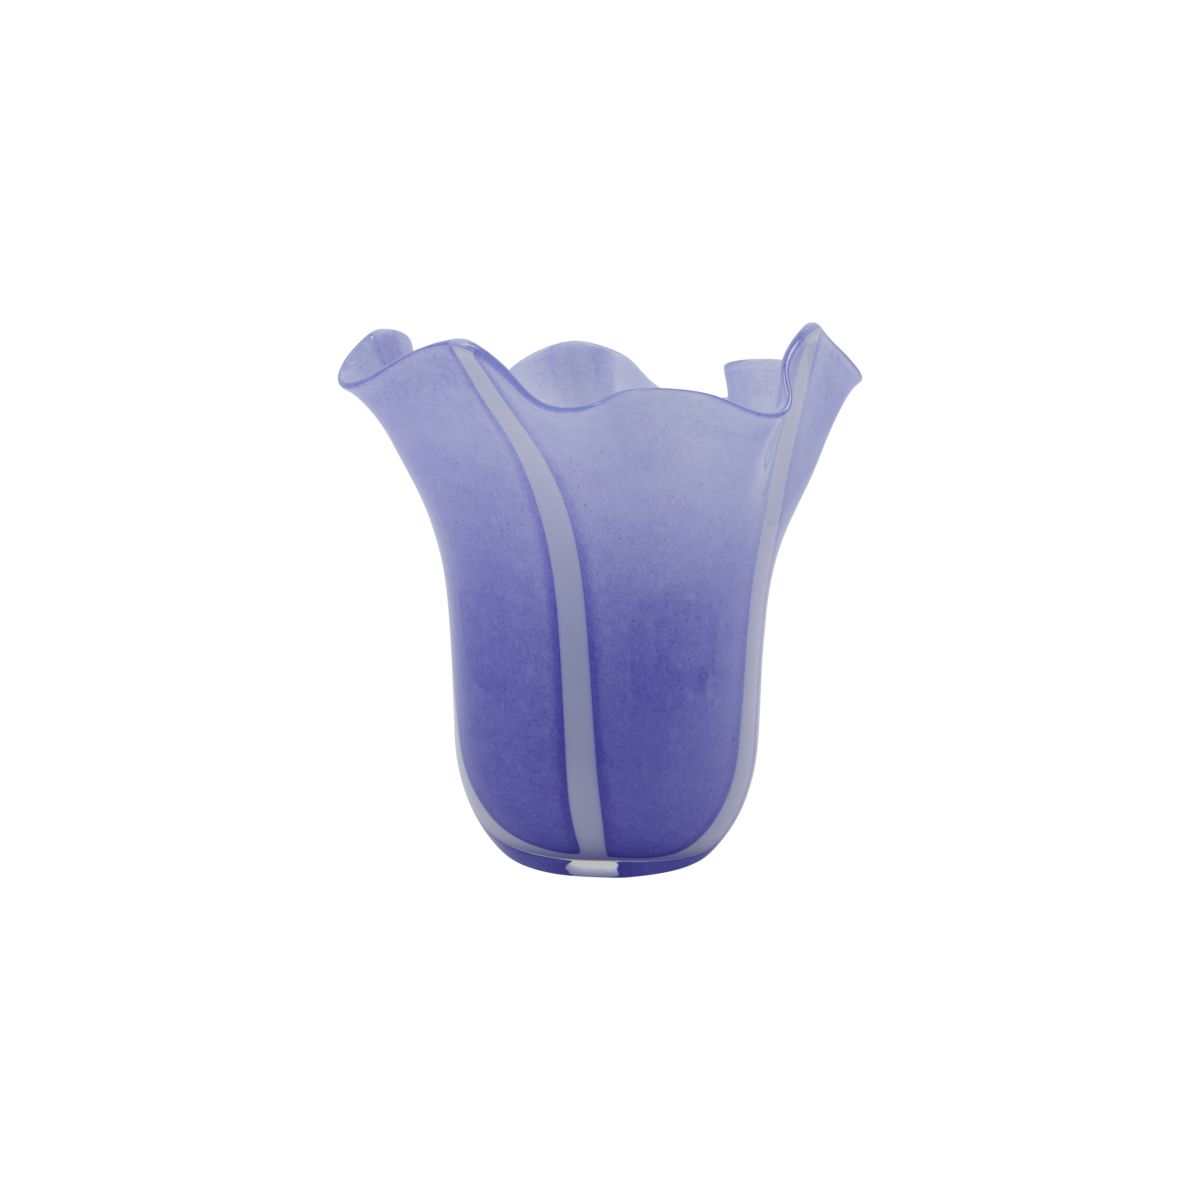 House doctor - Vase, Loose, Blue (202106067)